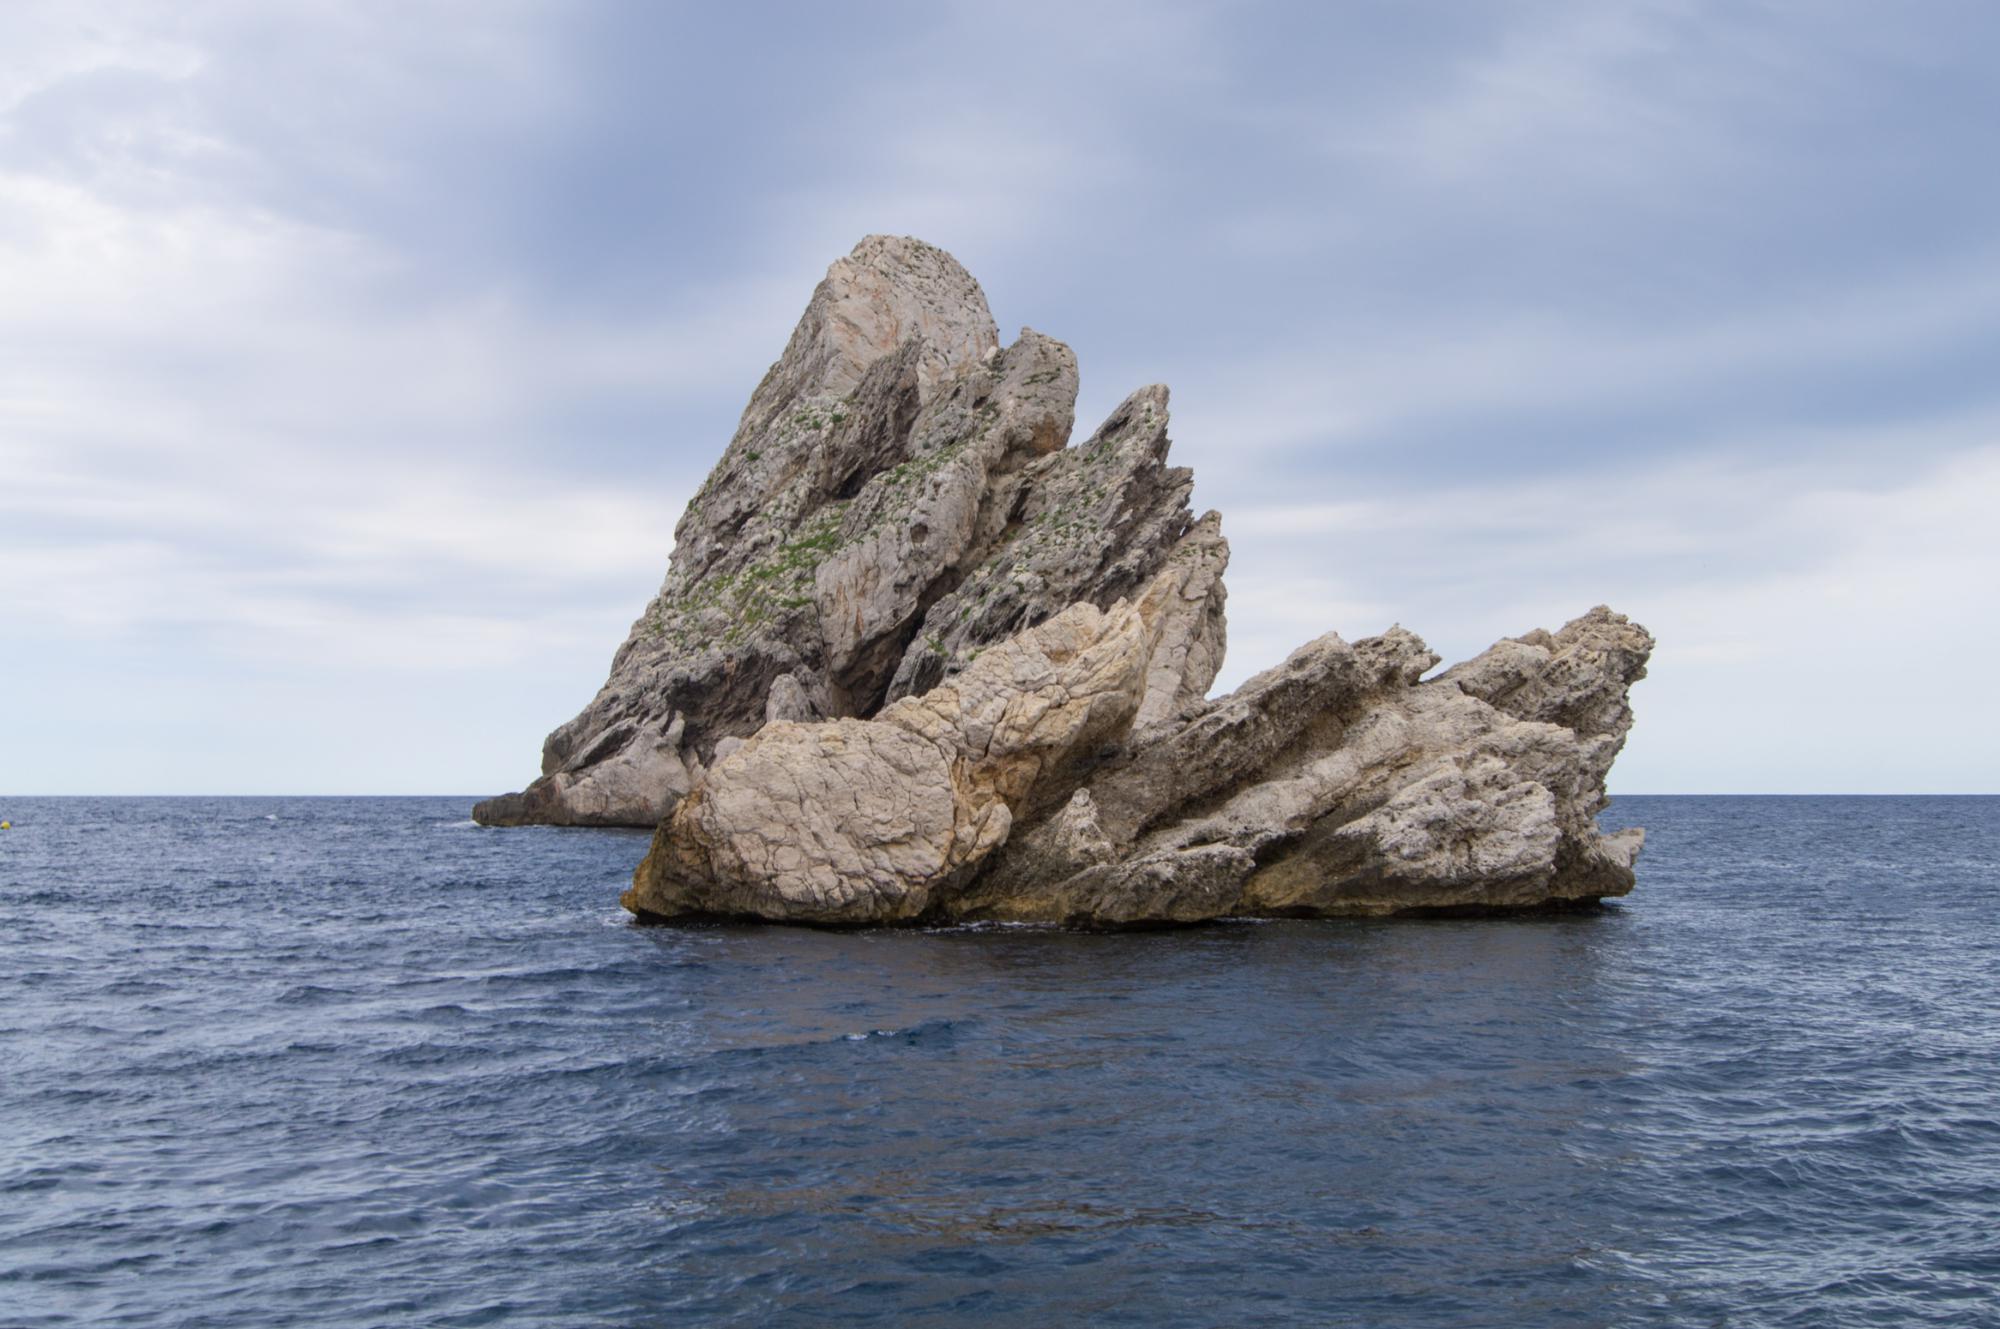 Скалы в Средиземном море недалеко от города Эстартит, расположенного на побережье Коста Брава